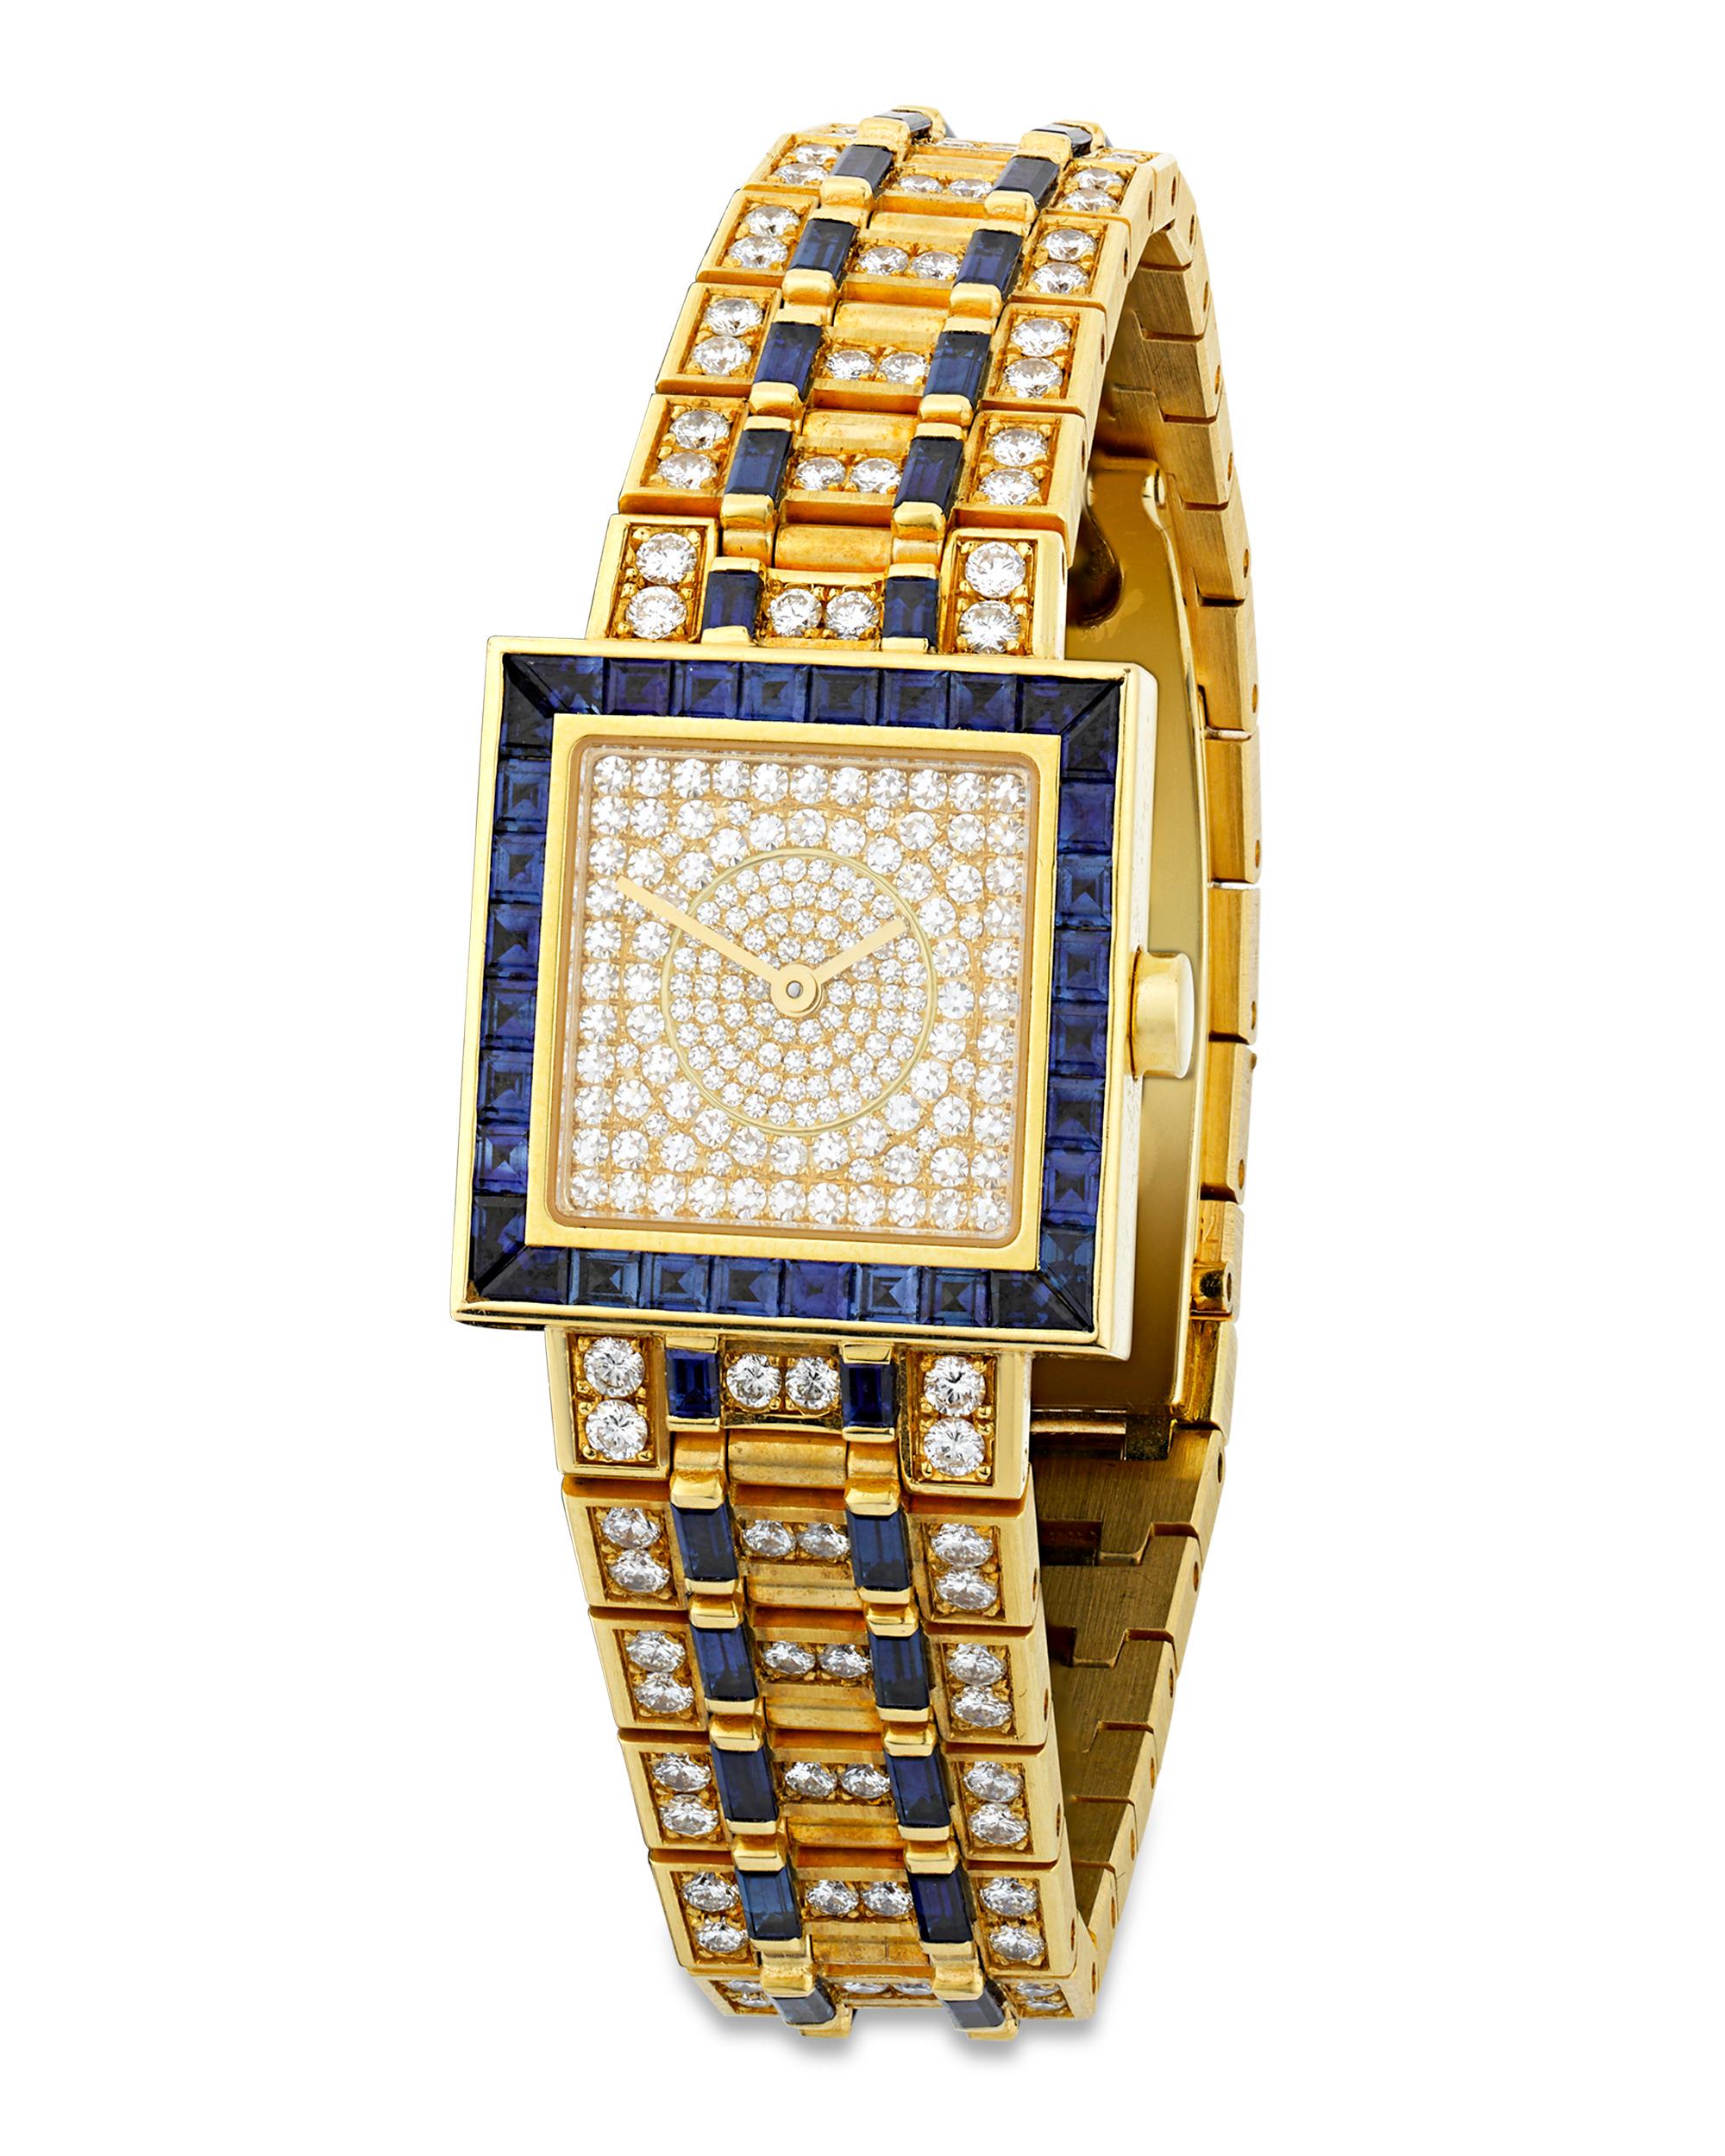 Cette montre-bracelet Quadrato voyante a été fabriquée par le bijoutier italien haut de gamme Bulgari. Un ensemble de diamants blancs sertis en pavé totalisant environ 4,51 carats orne la montre, qui est fabriquée en or jaune 18 carats dans un